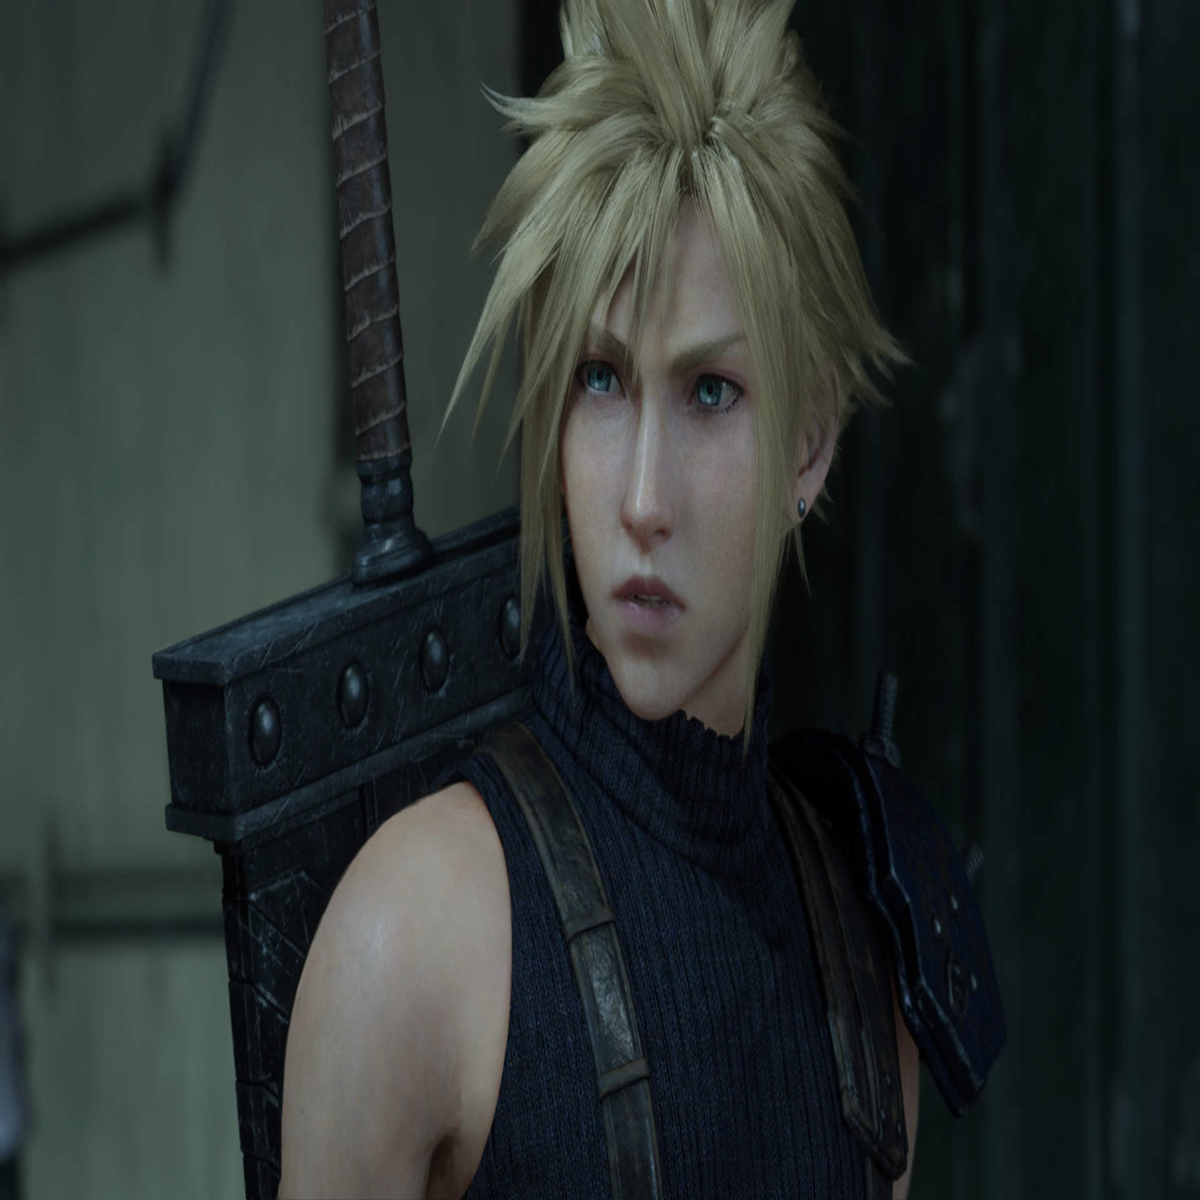 Final Fantasy 7 Remake: Hard Mode Guide